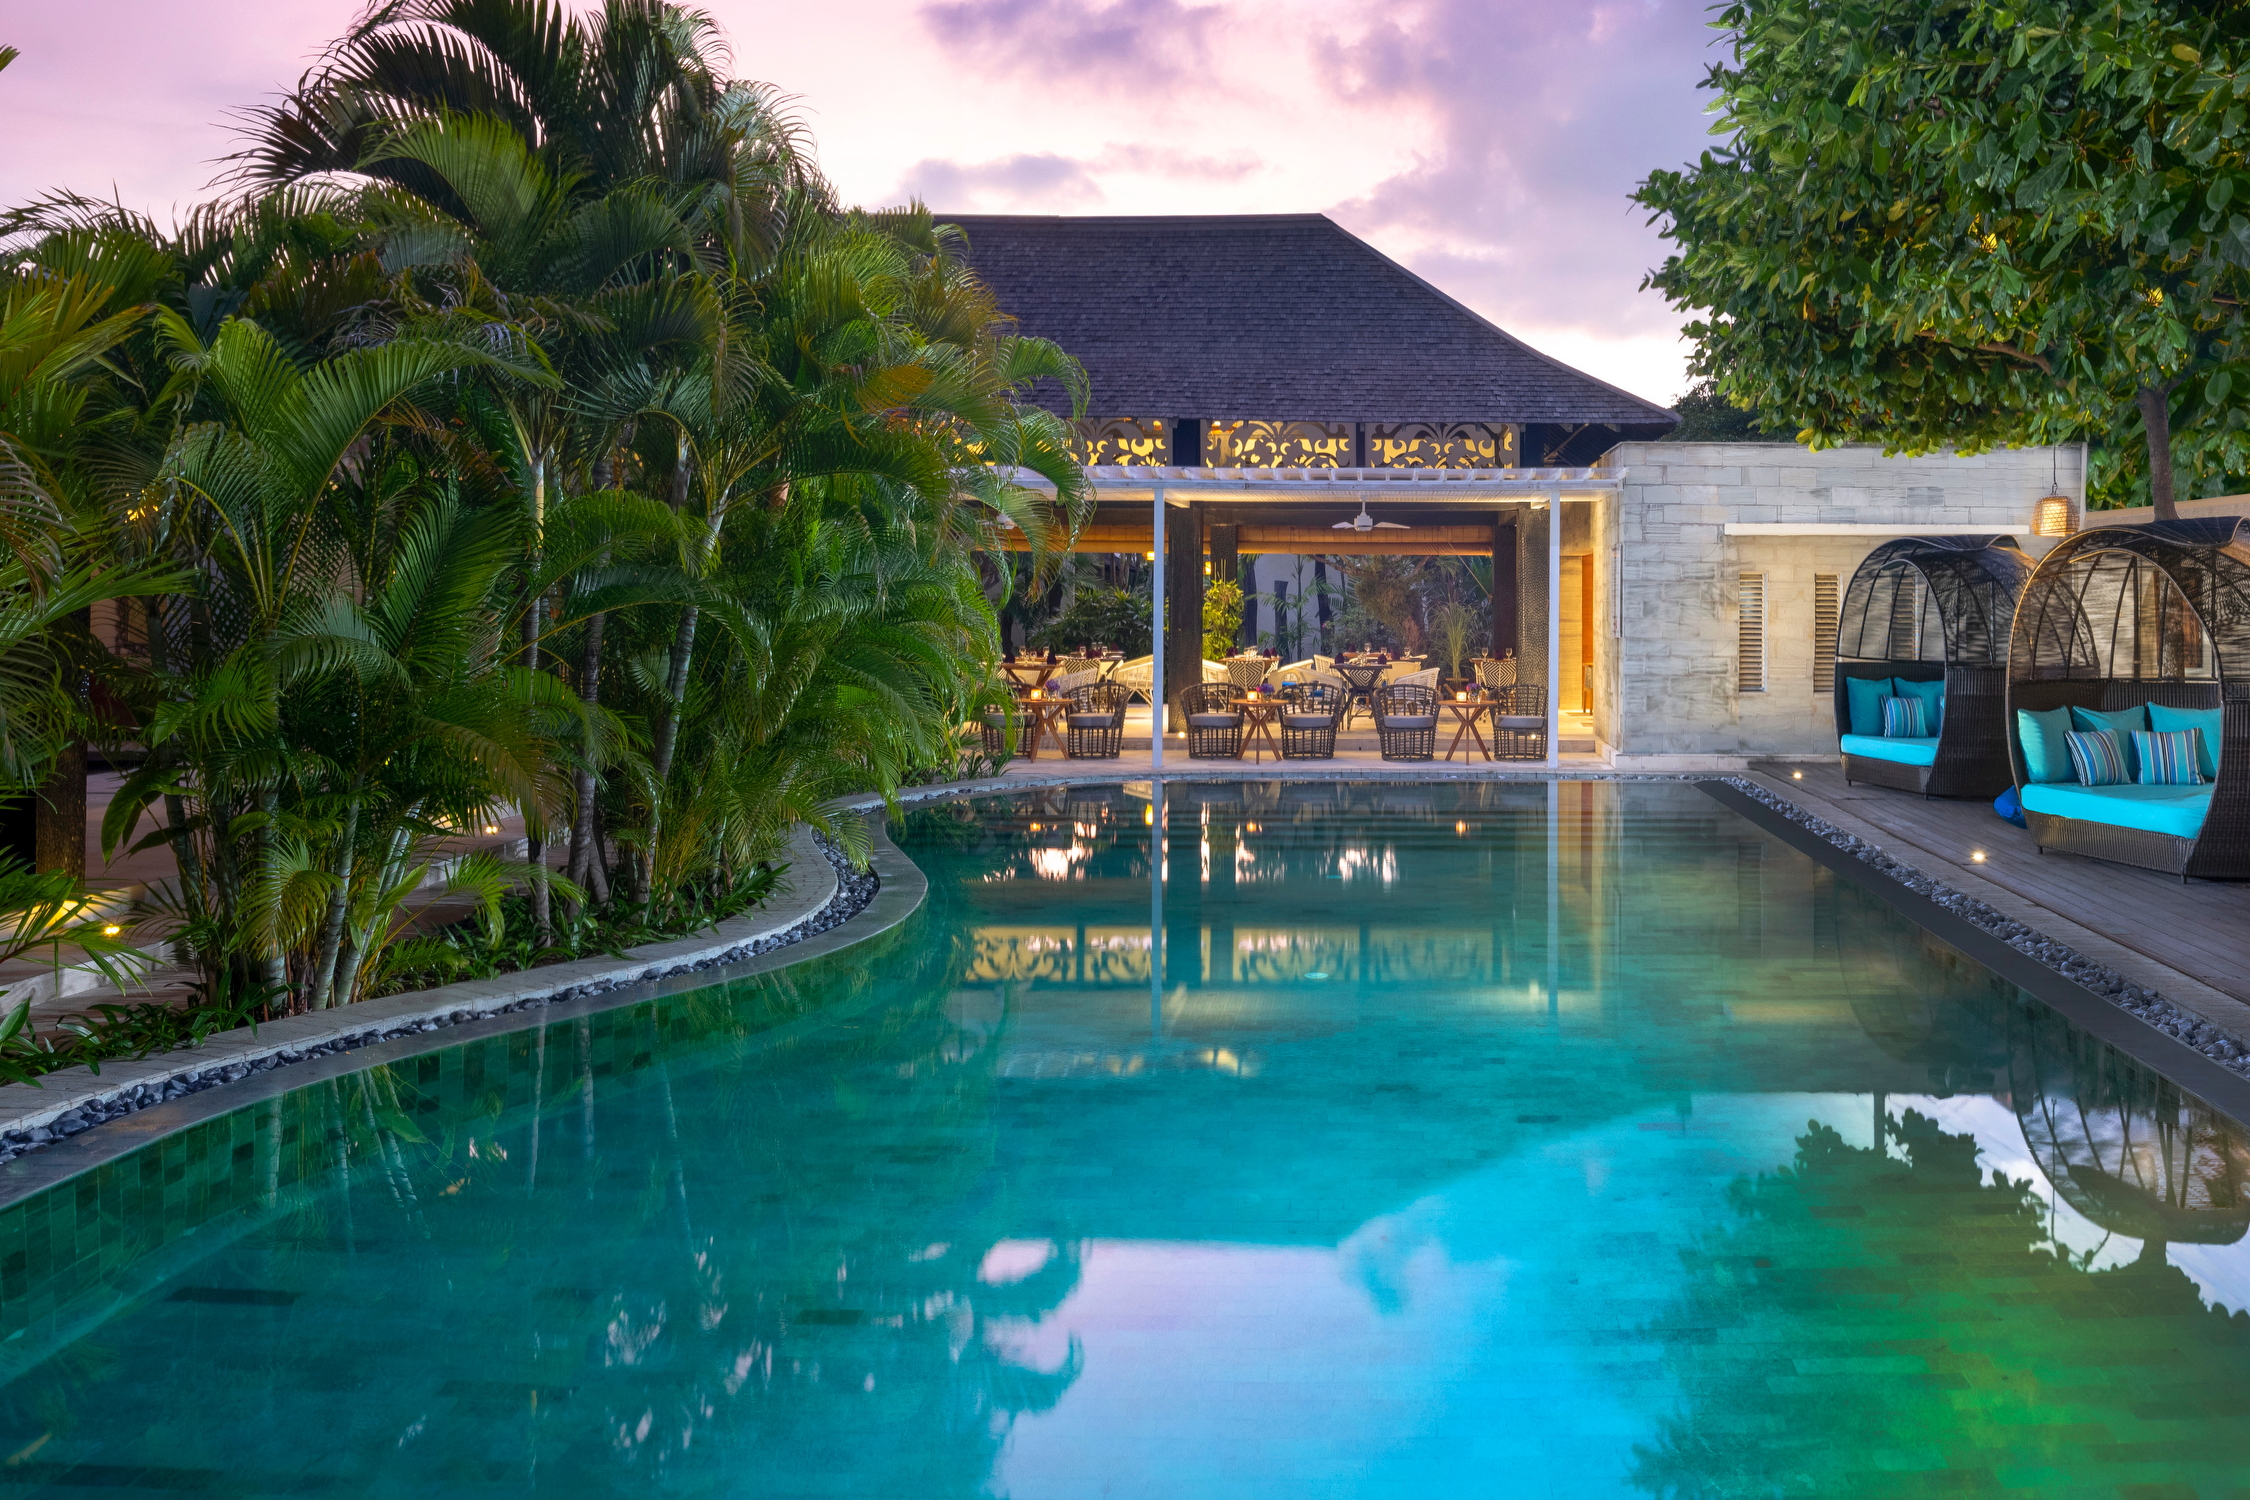 Pool at the Avani Seminyak Resort in Bali, Indonesia. Click to enlarge.